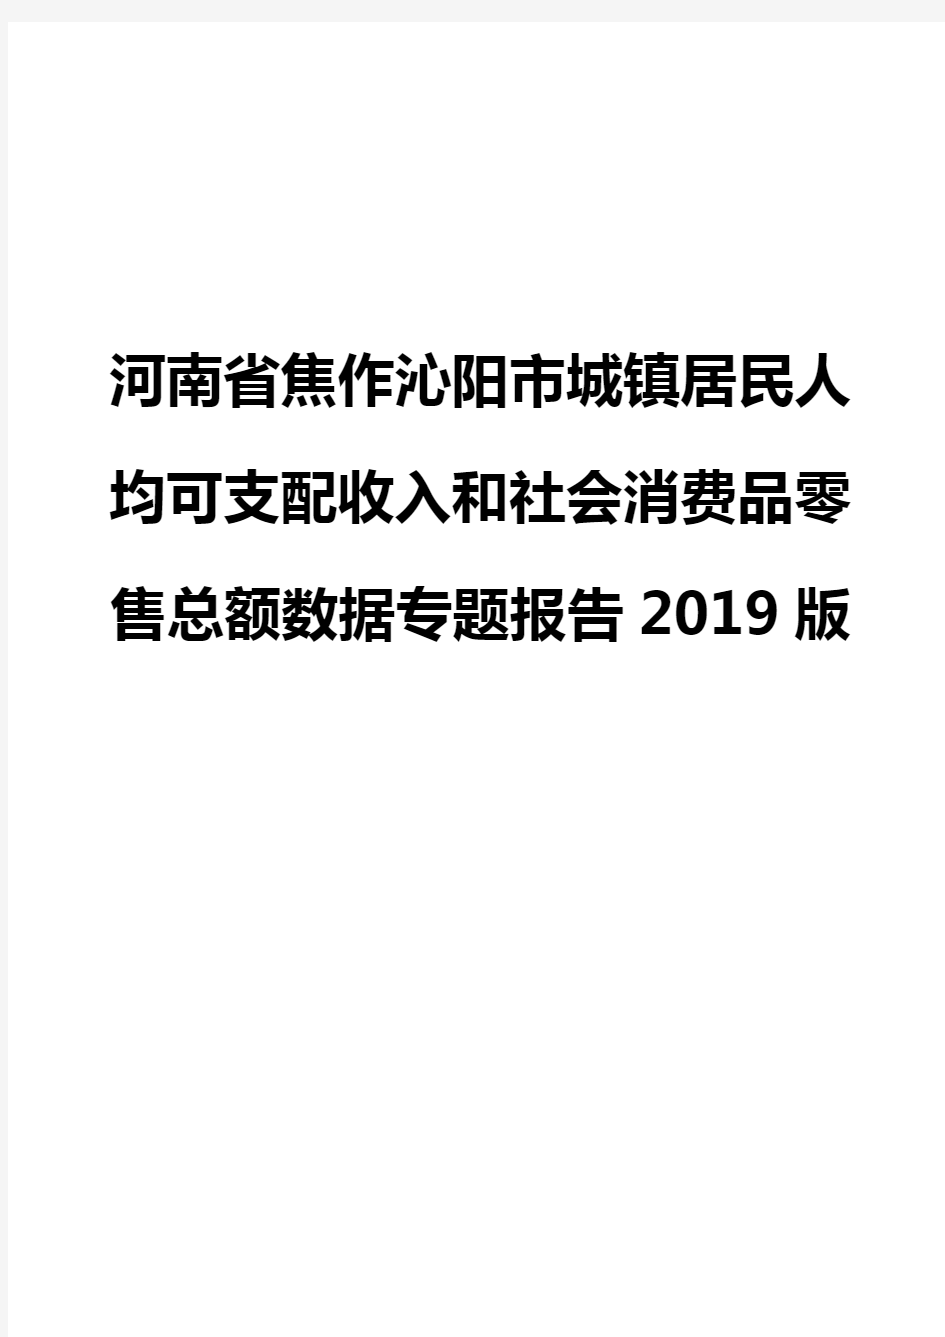 河南省焦作沁阳市城镇居民人均可支配收入和社会消费品零售总额数据专题报告2019版